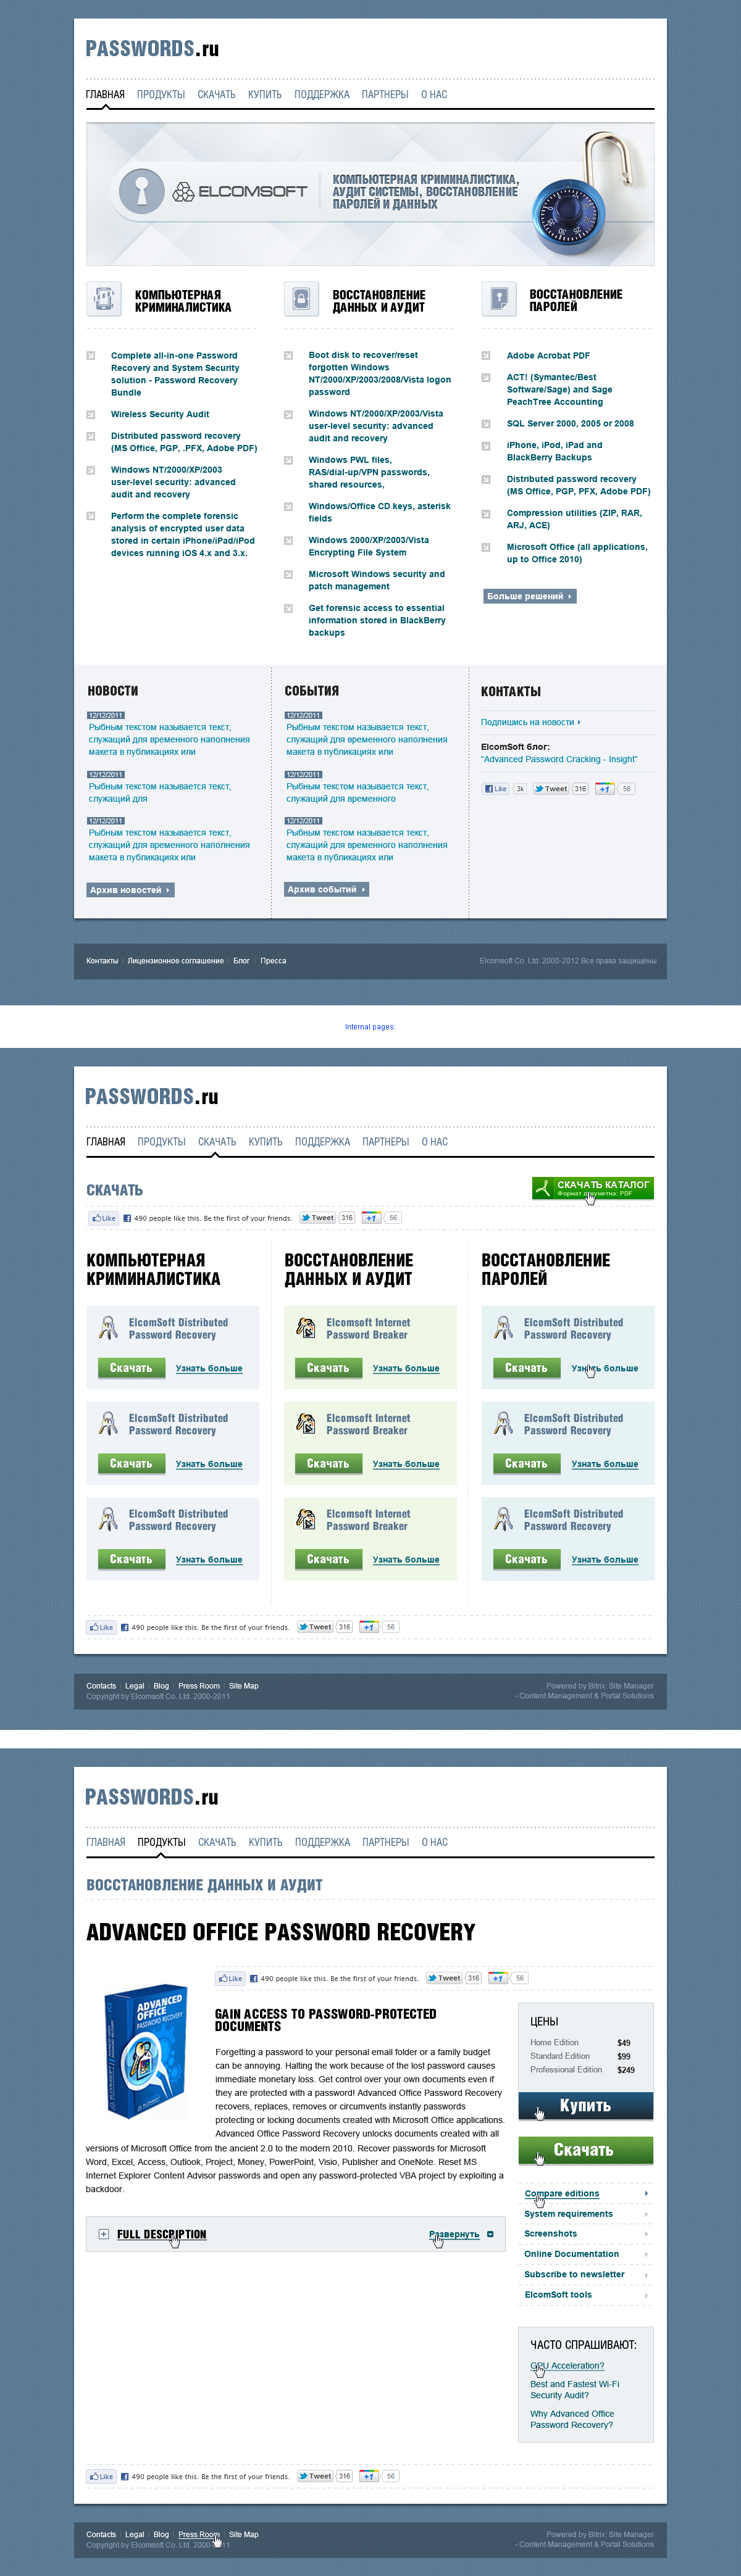 Website Design for Passwords.ru